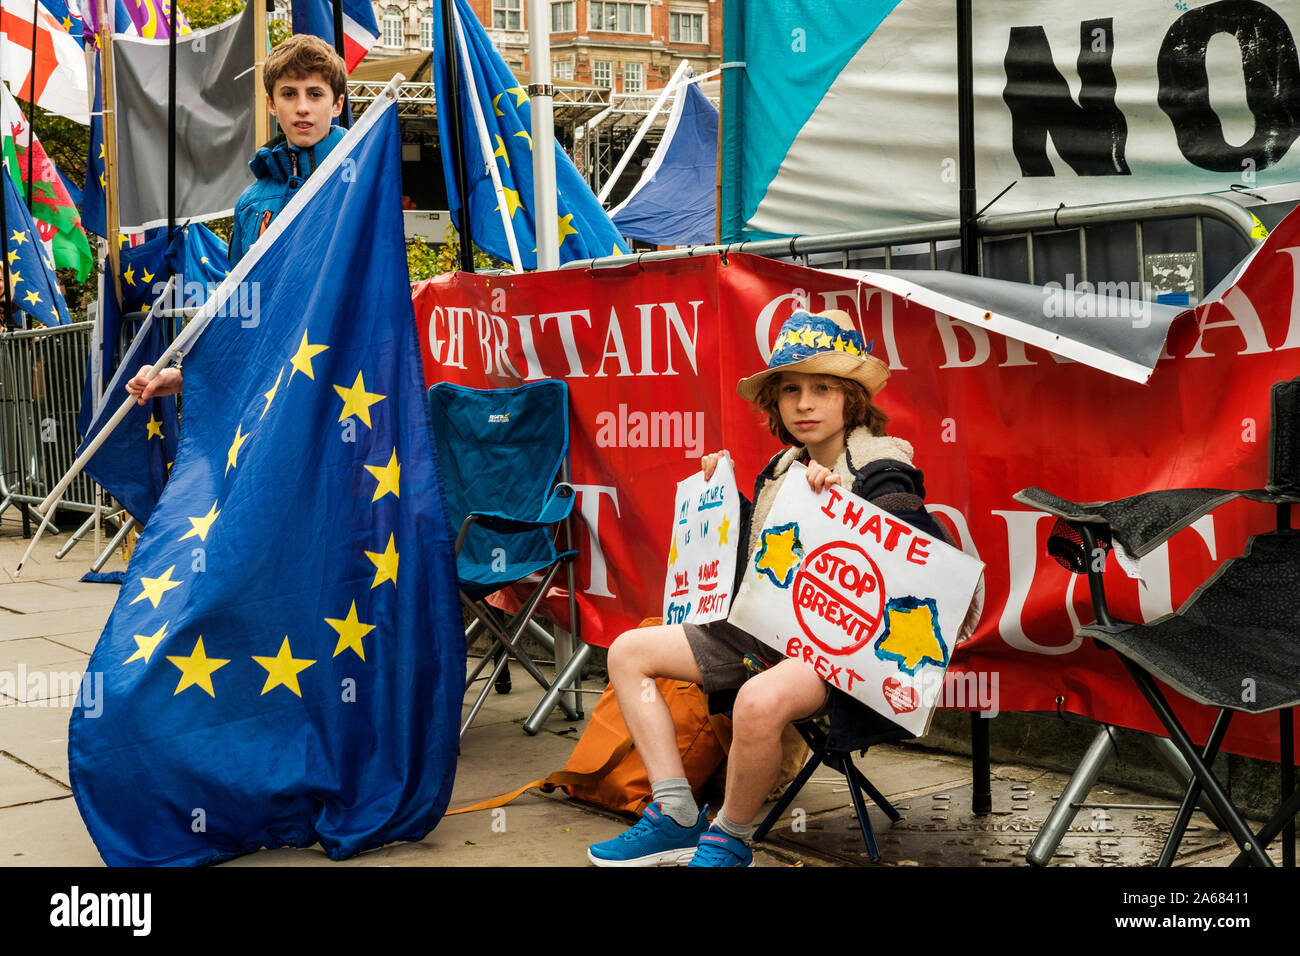 Londres, Reino Unido, octubre de 2019.Miembro de la prensa tomando fotografías de niños pequeños con anti-Brexit carteles. Foto de stock